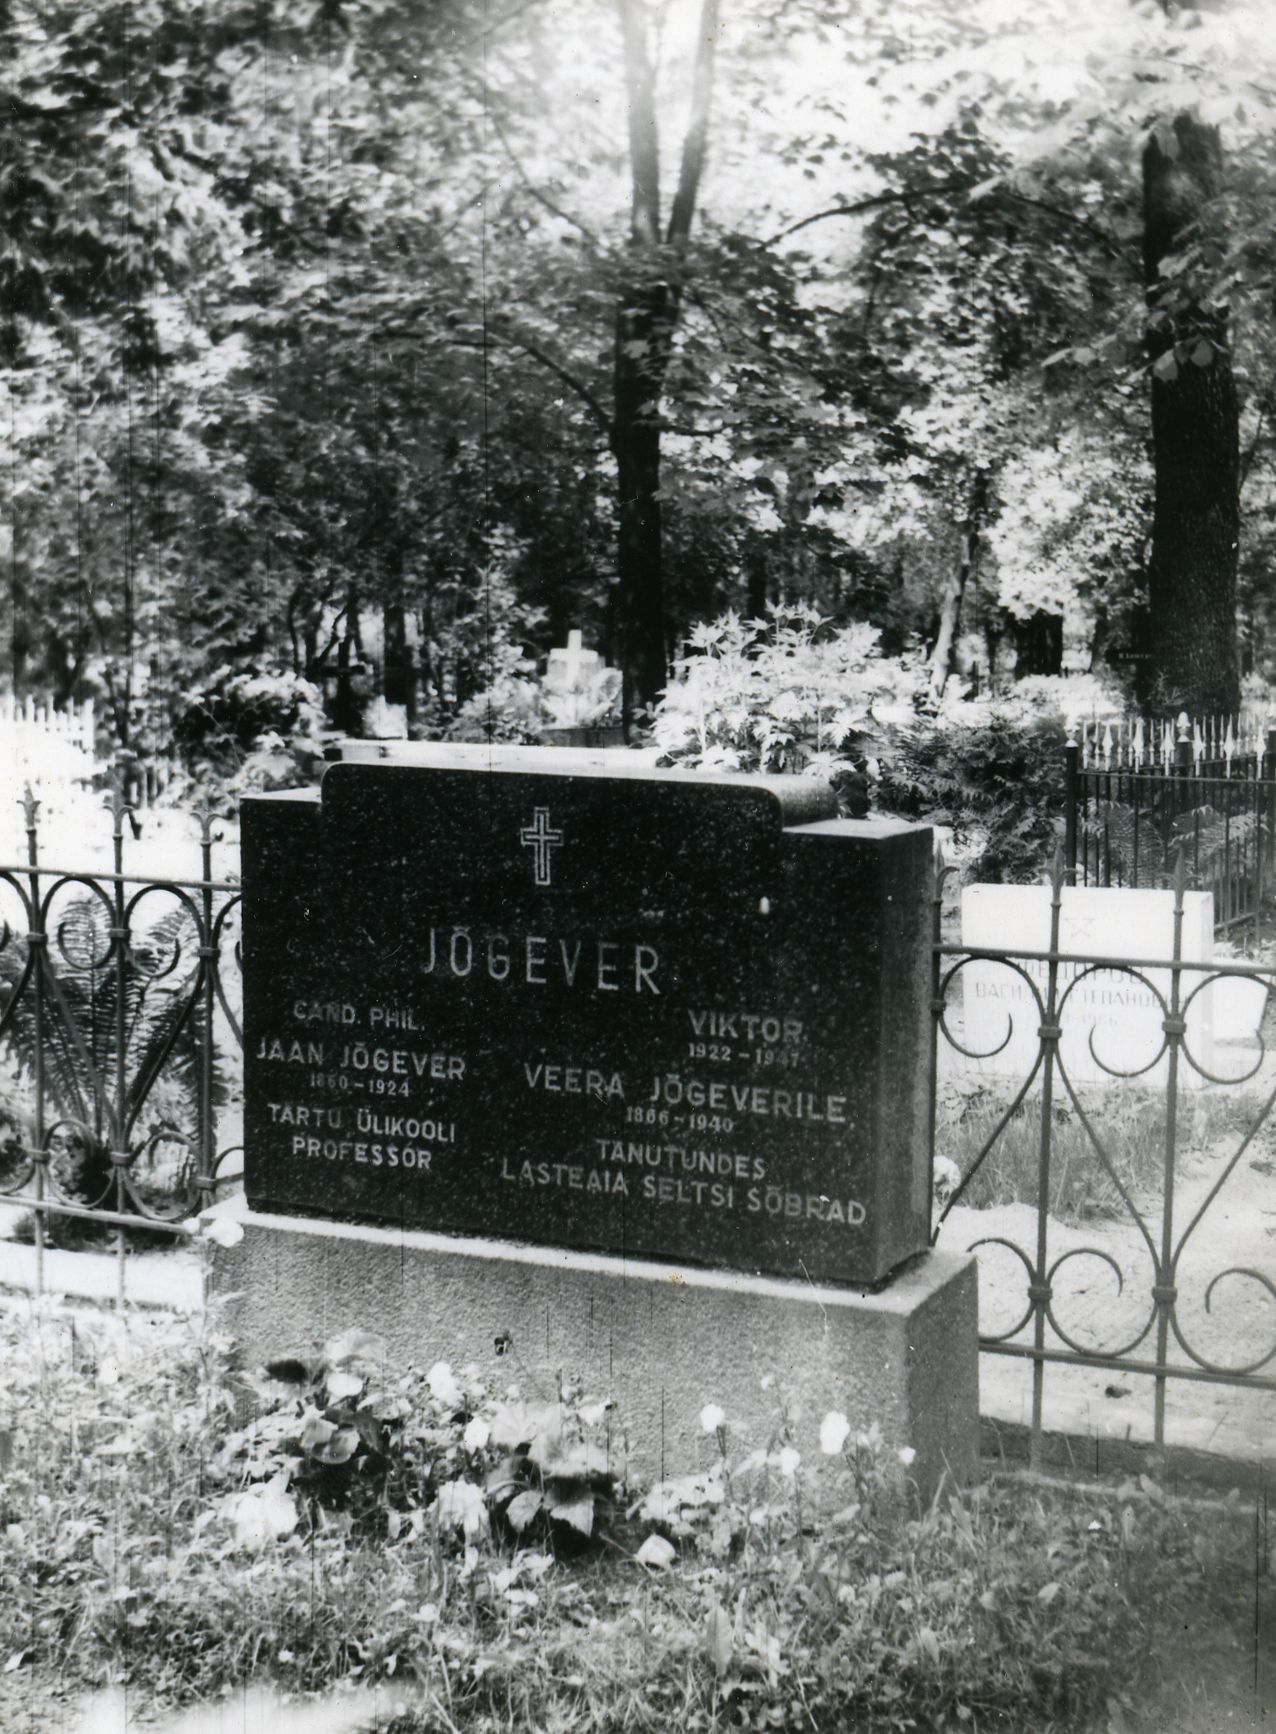 Jaan Jõgever's grave in Tartu